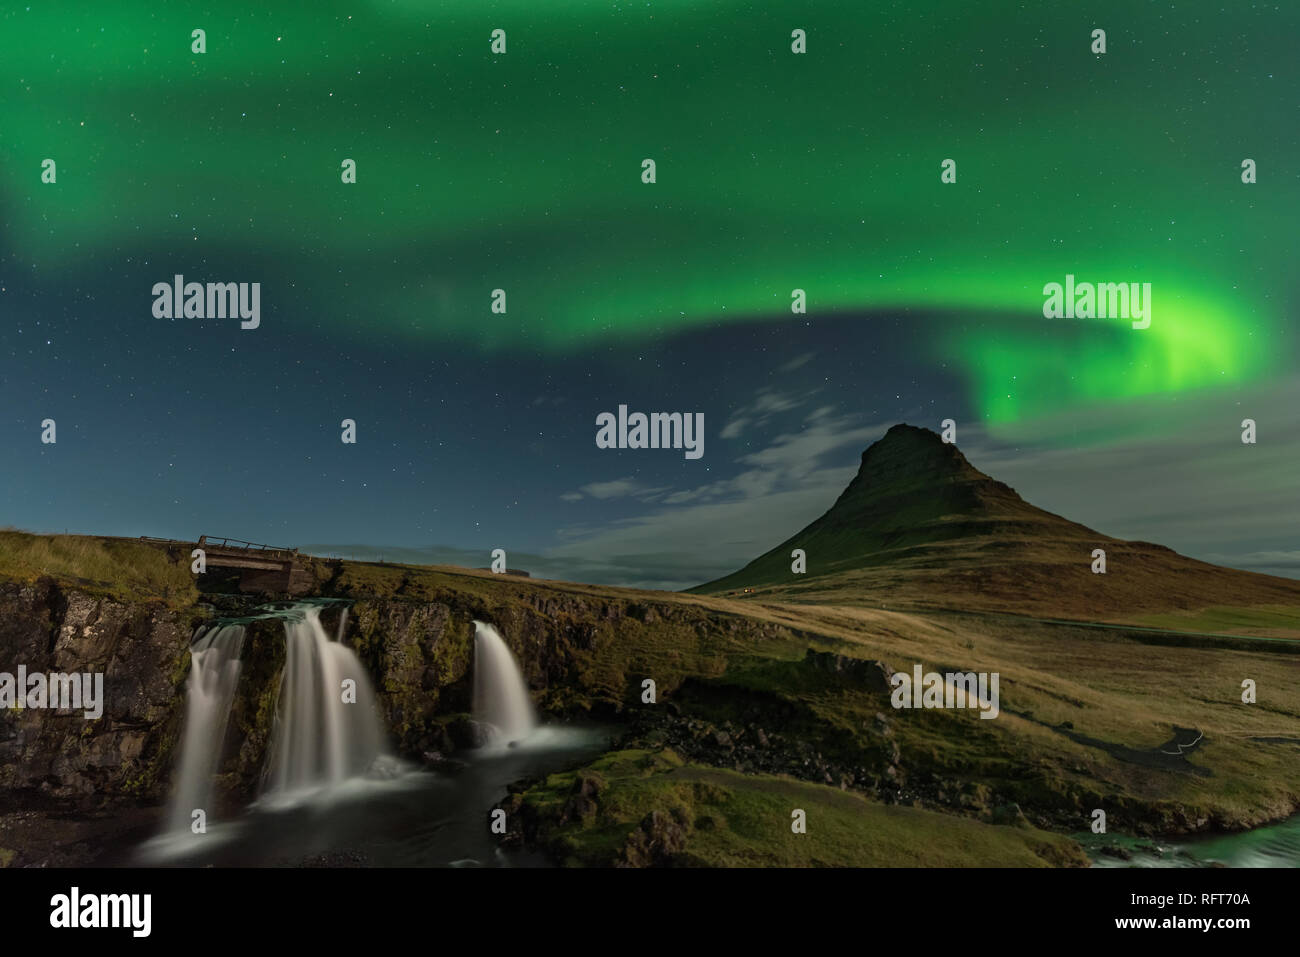 Das Nordlicht am Berg Kirkjufell Island. Landschaft mit Wasserfall Kirkjufellsfoss, mit grünen Bands der Aurora Borealis. Snaefellnes, Icela Stockfoto